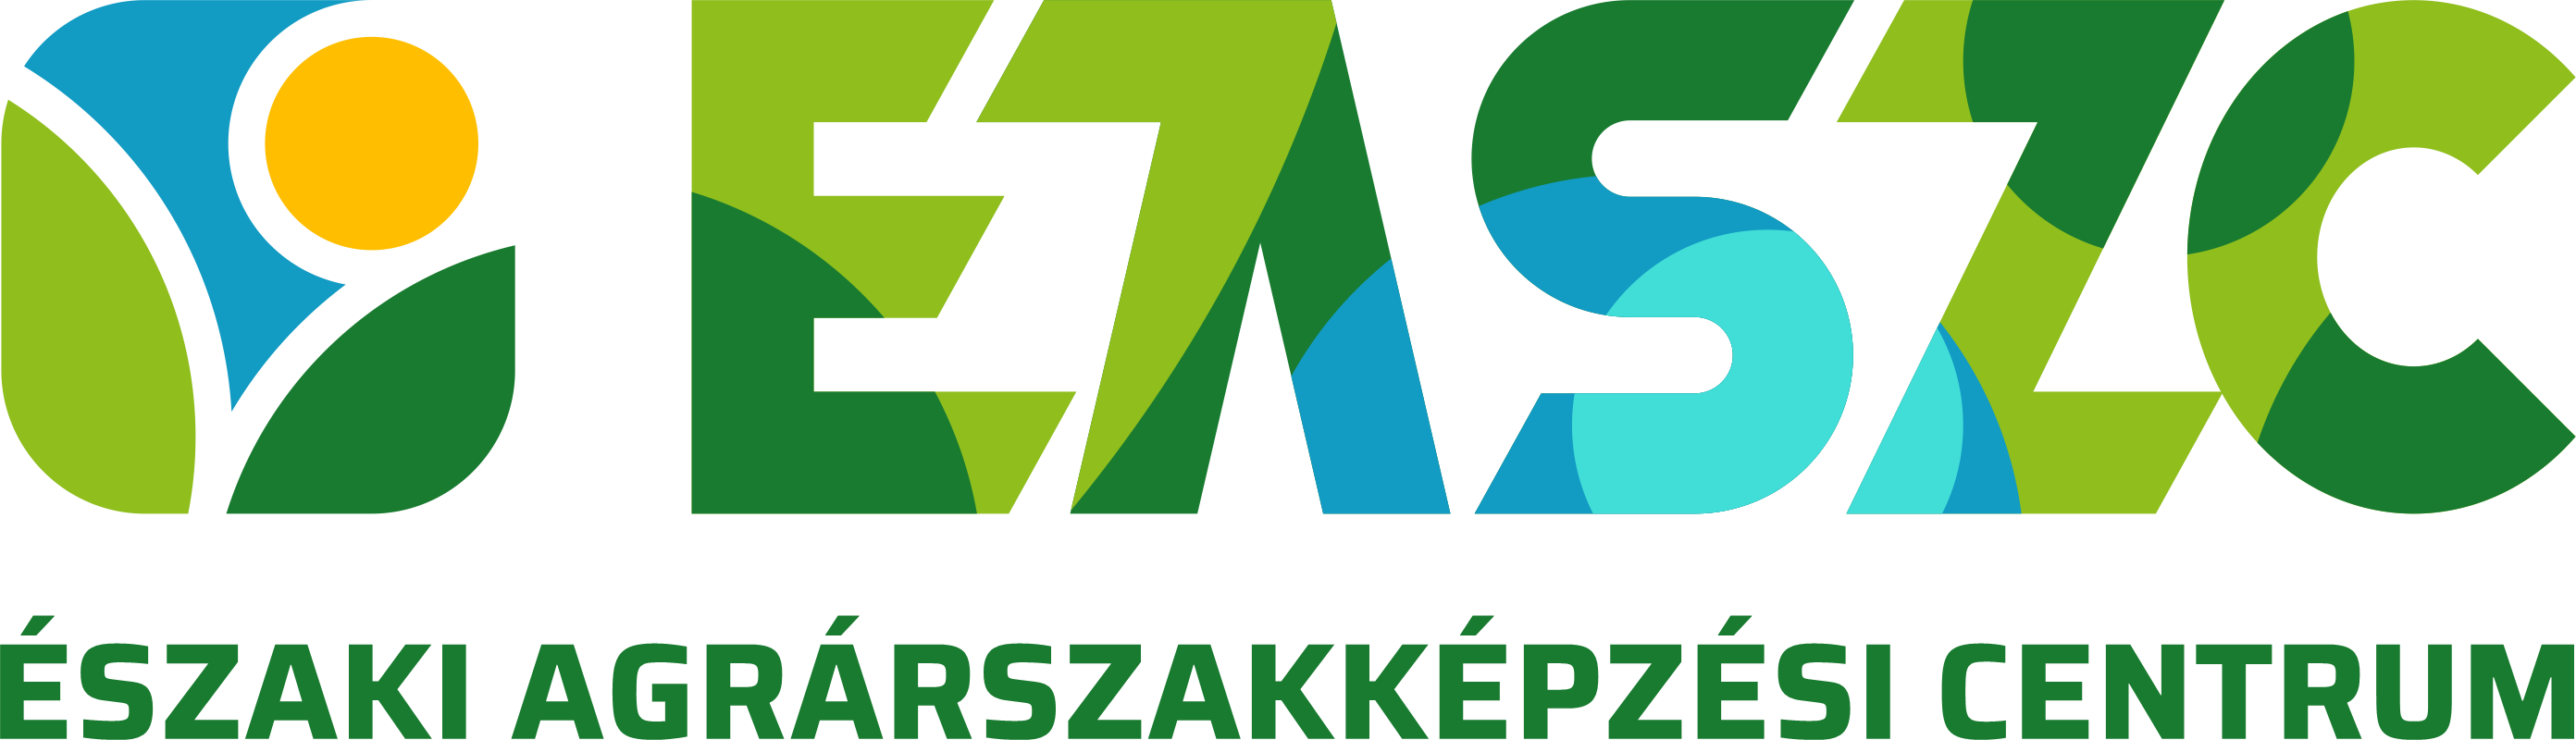 Az ÉASZC logója.